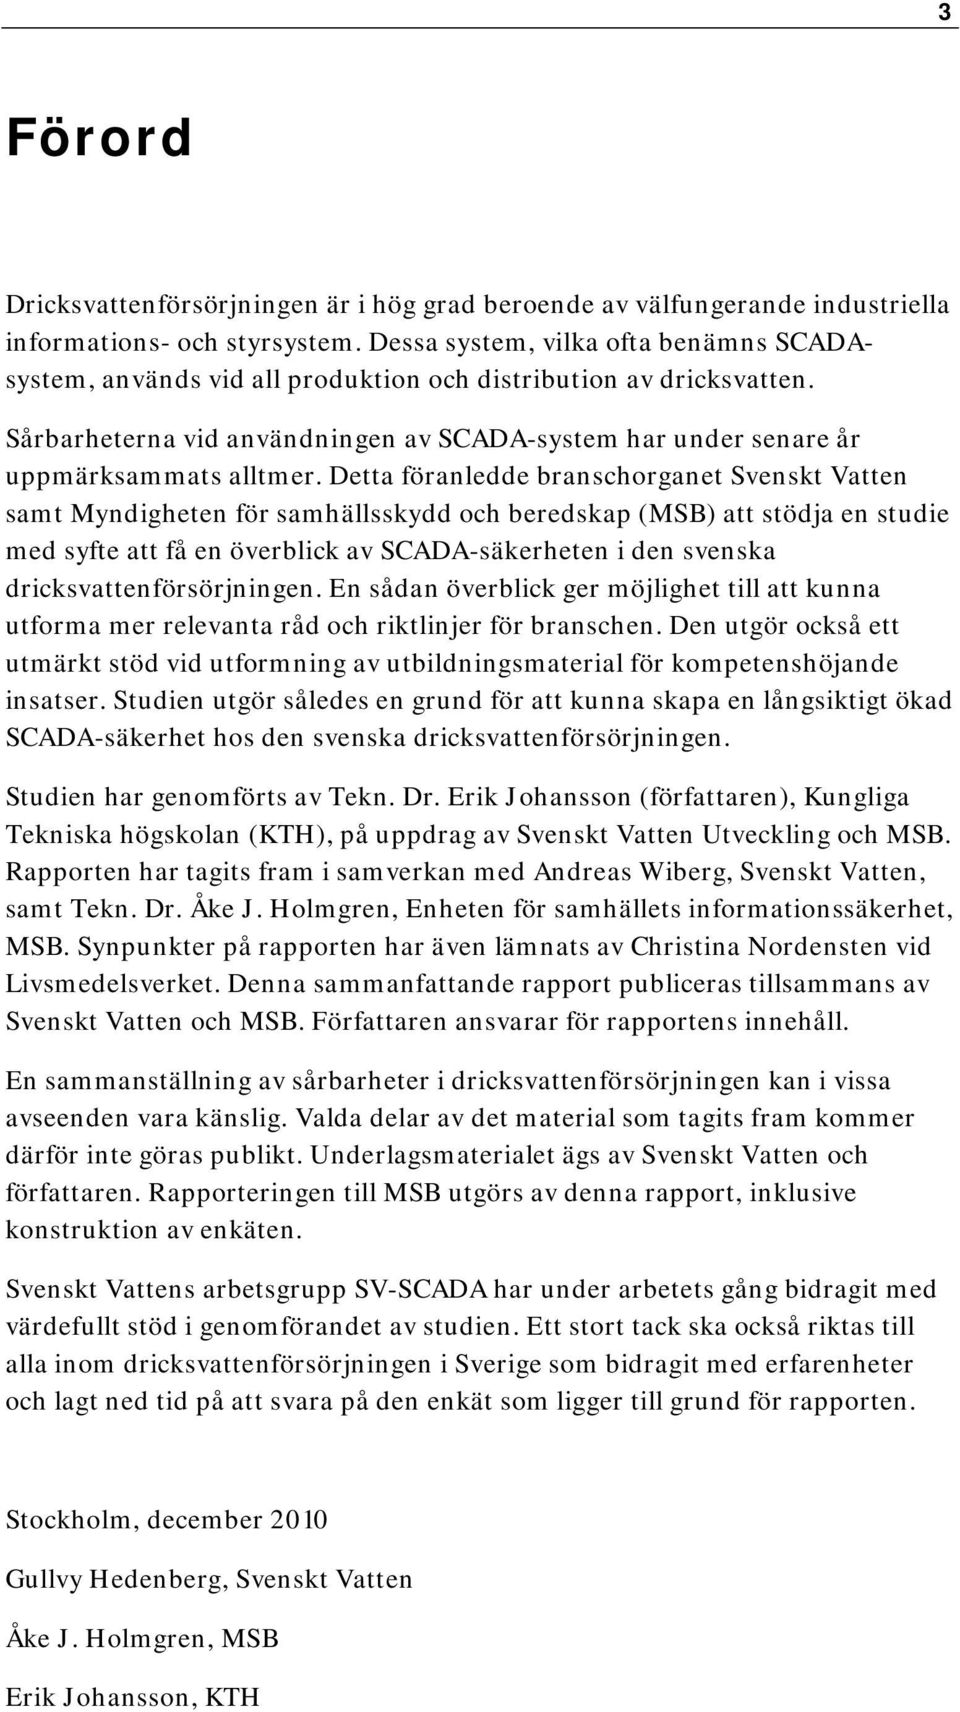 Detta föranledde branschorganet Svenskt Vatten samt Myndigheten för samhällsskydd och beredskap (MSB) att stödja en studie med syfte att få en överblick av SCADA-säkerheten i den svenska